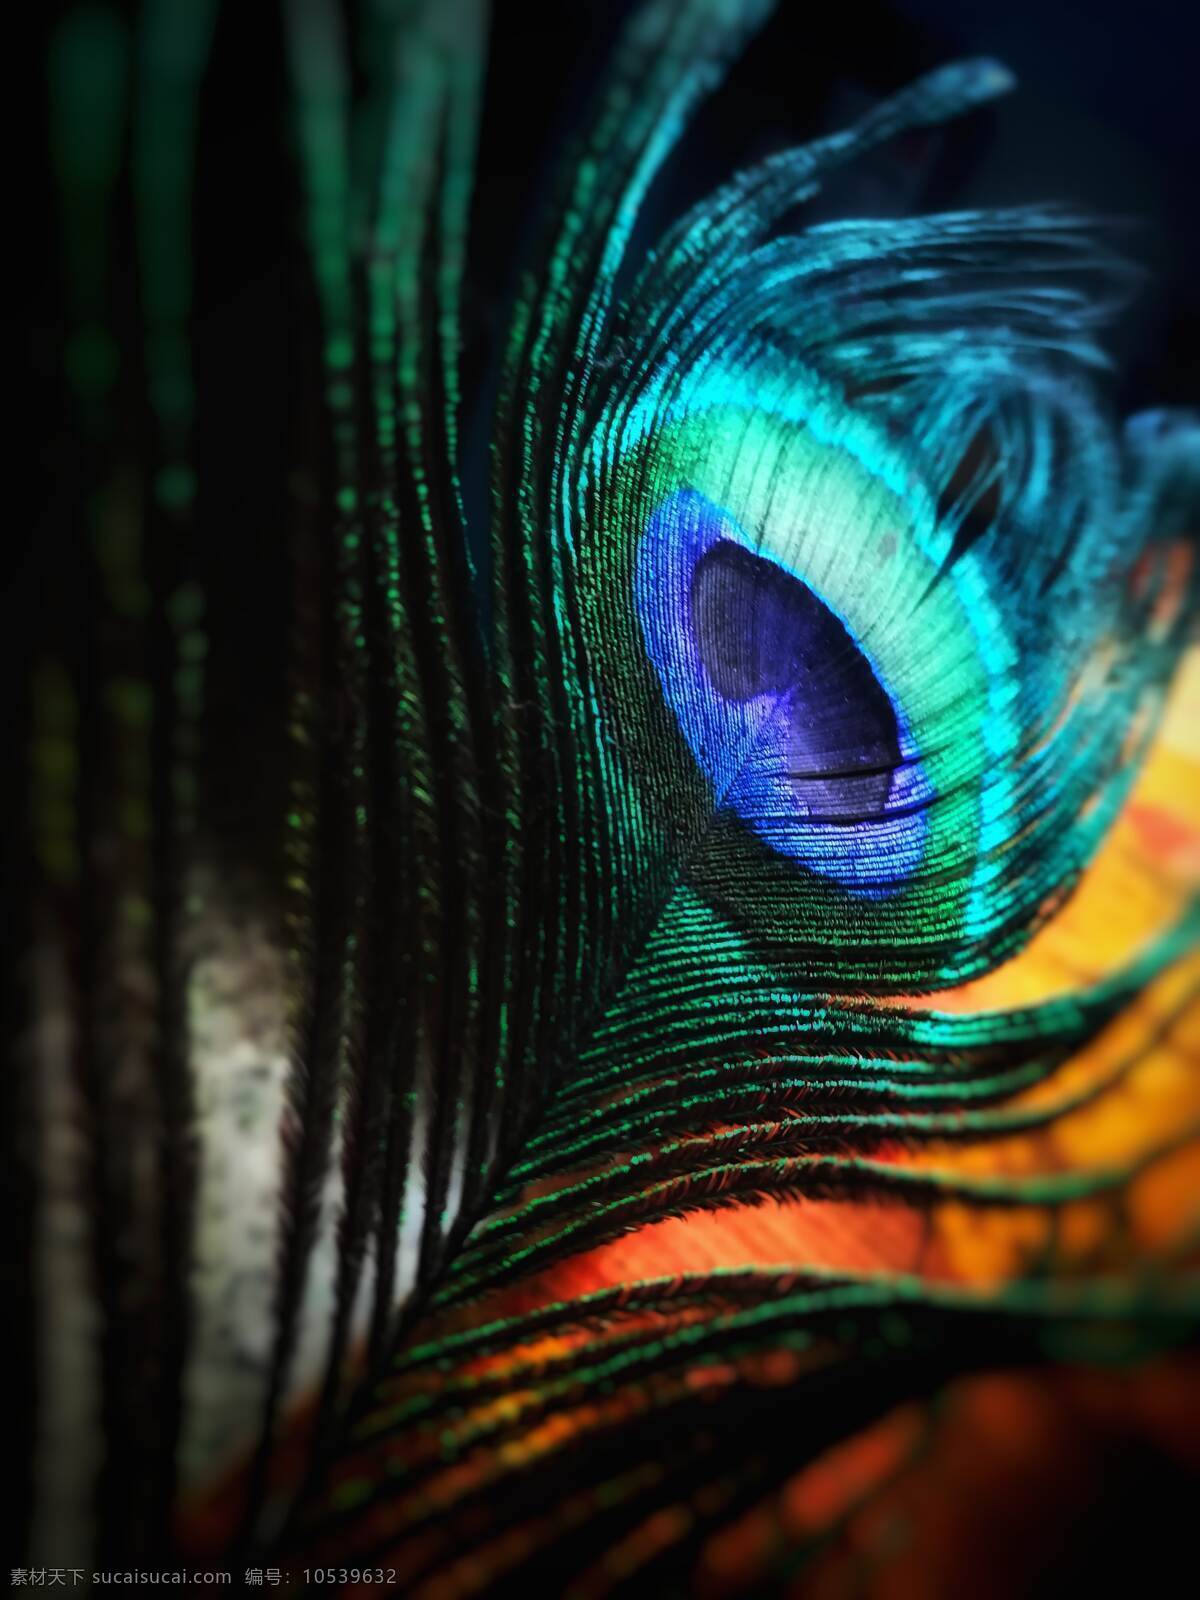 孔雀羽毛 孔雀 羽毛 纹路 绿色 蓝色 发光 神秘 自然 底纹边框 背景底纹